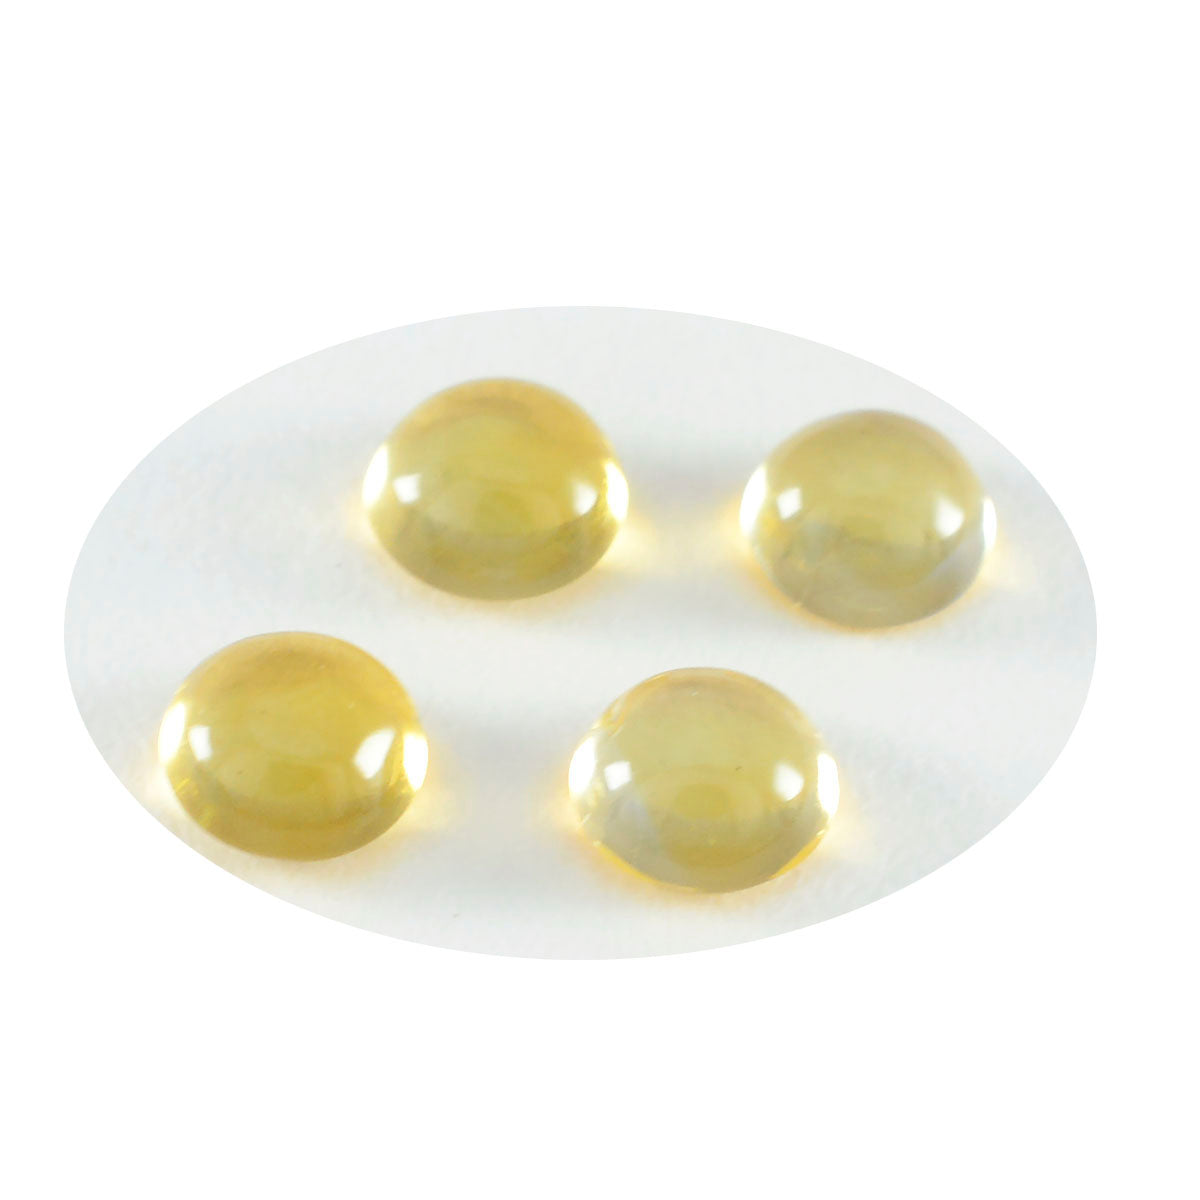 riyogems 1 шт. желтый цитрин кабошон 11x11 мм круглая форма, красивый качественный свободный драгоценный камень